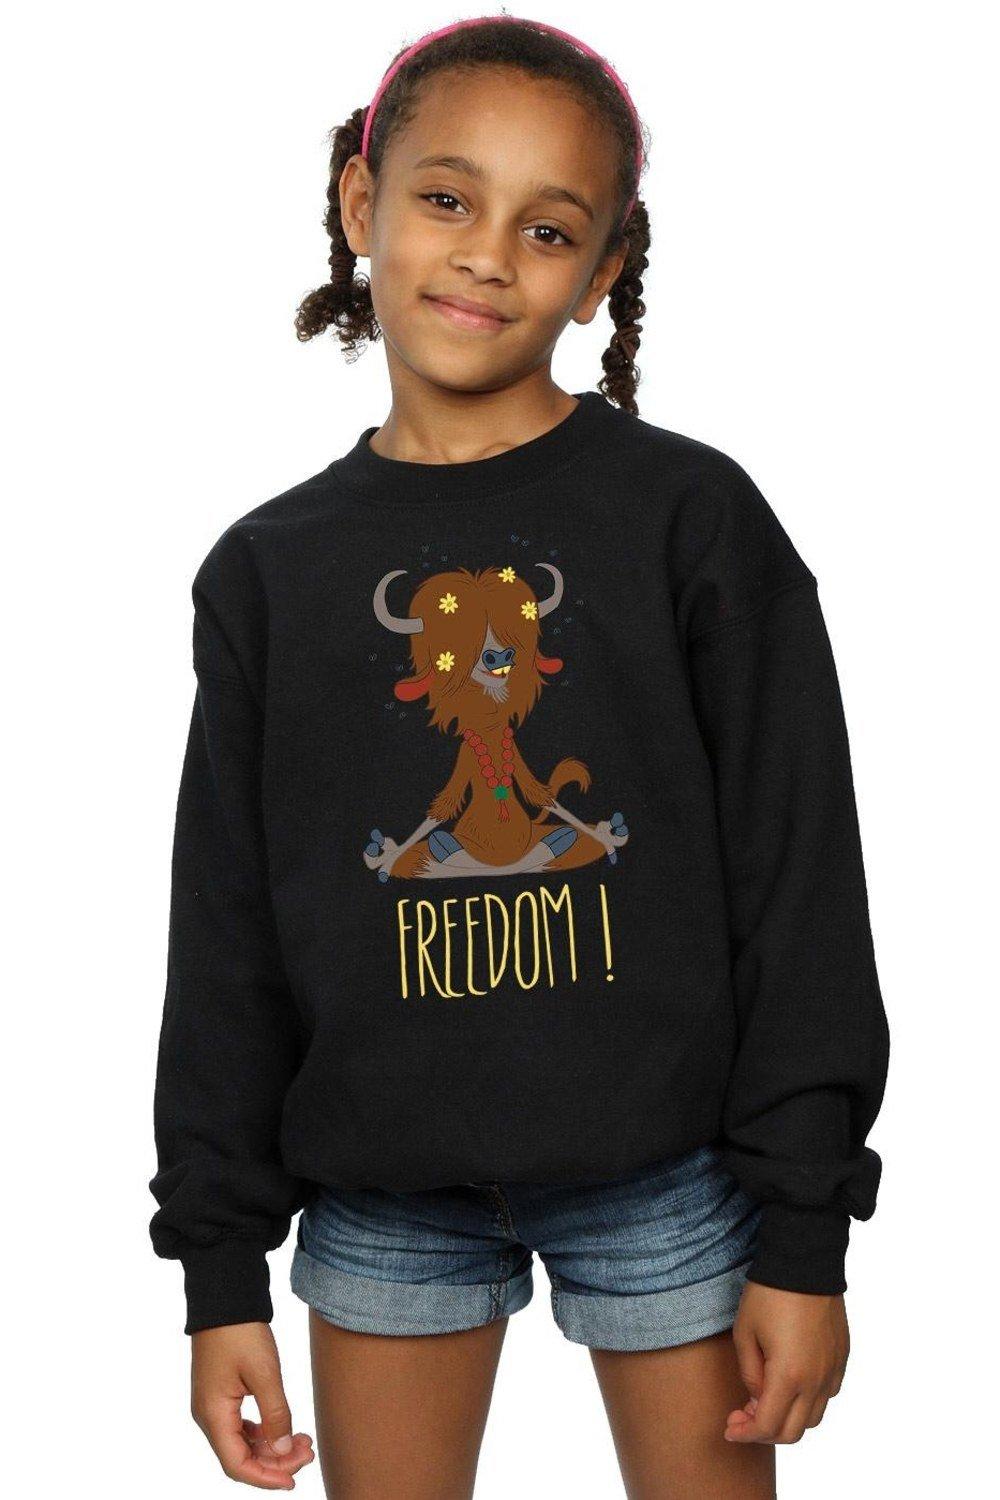 Zootropolis Yak Freedom Sweatshirt